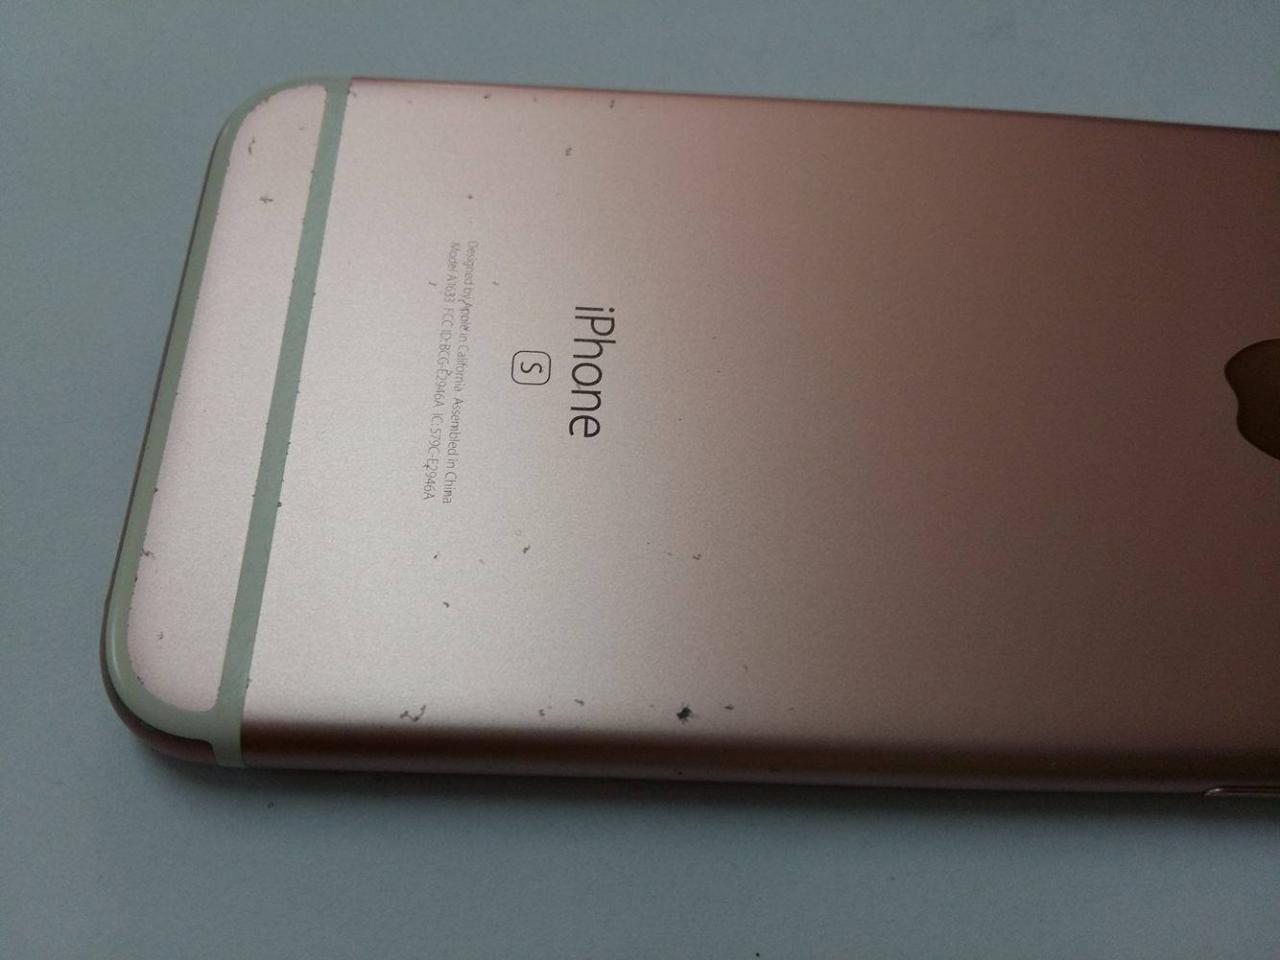 Sơn Iphone 6s rose gold bị bong tróc vì sao không nên dùng ốp lưng cho iPhone 